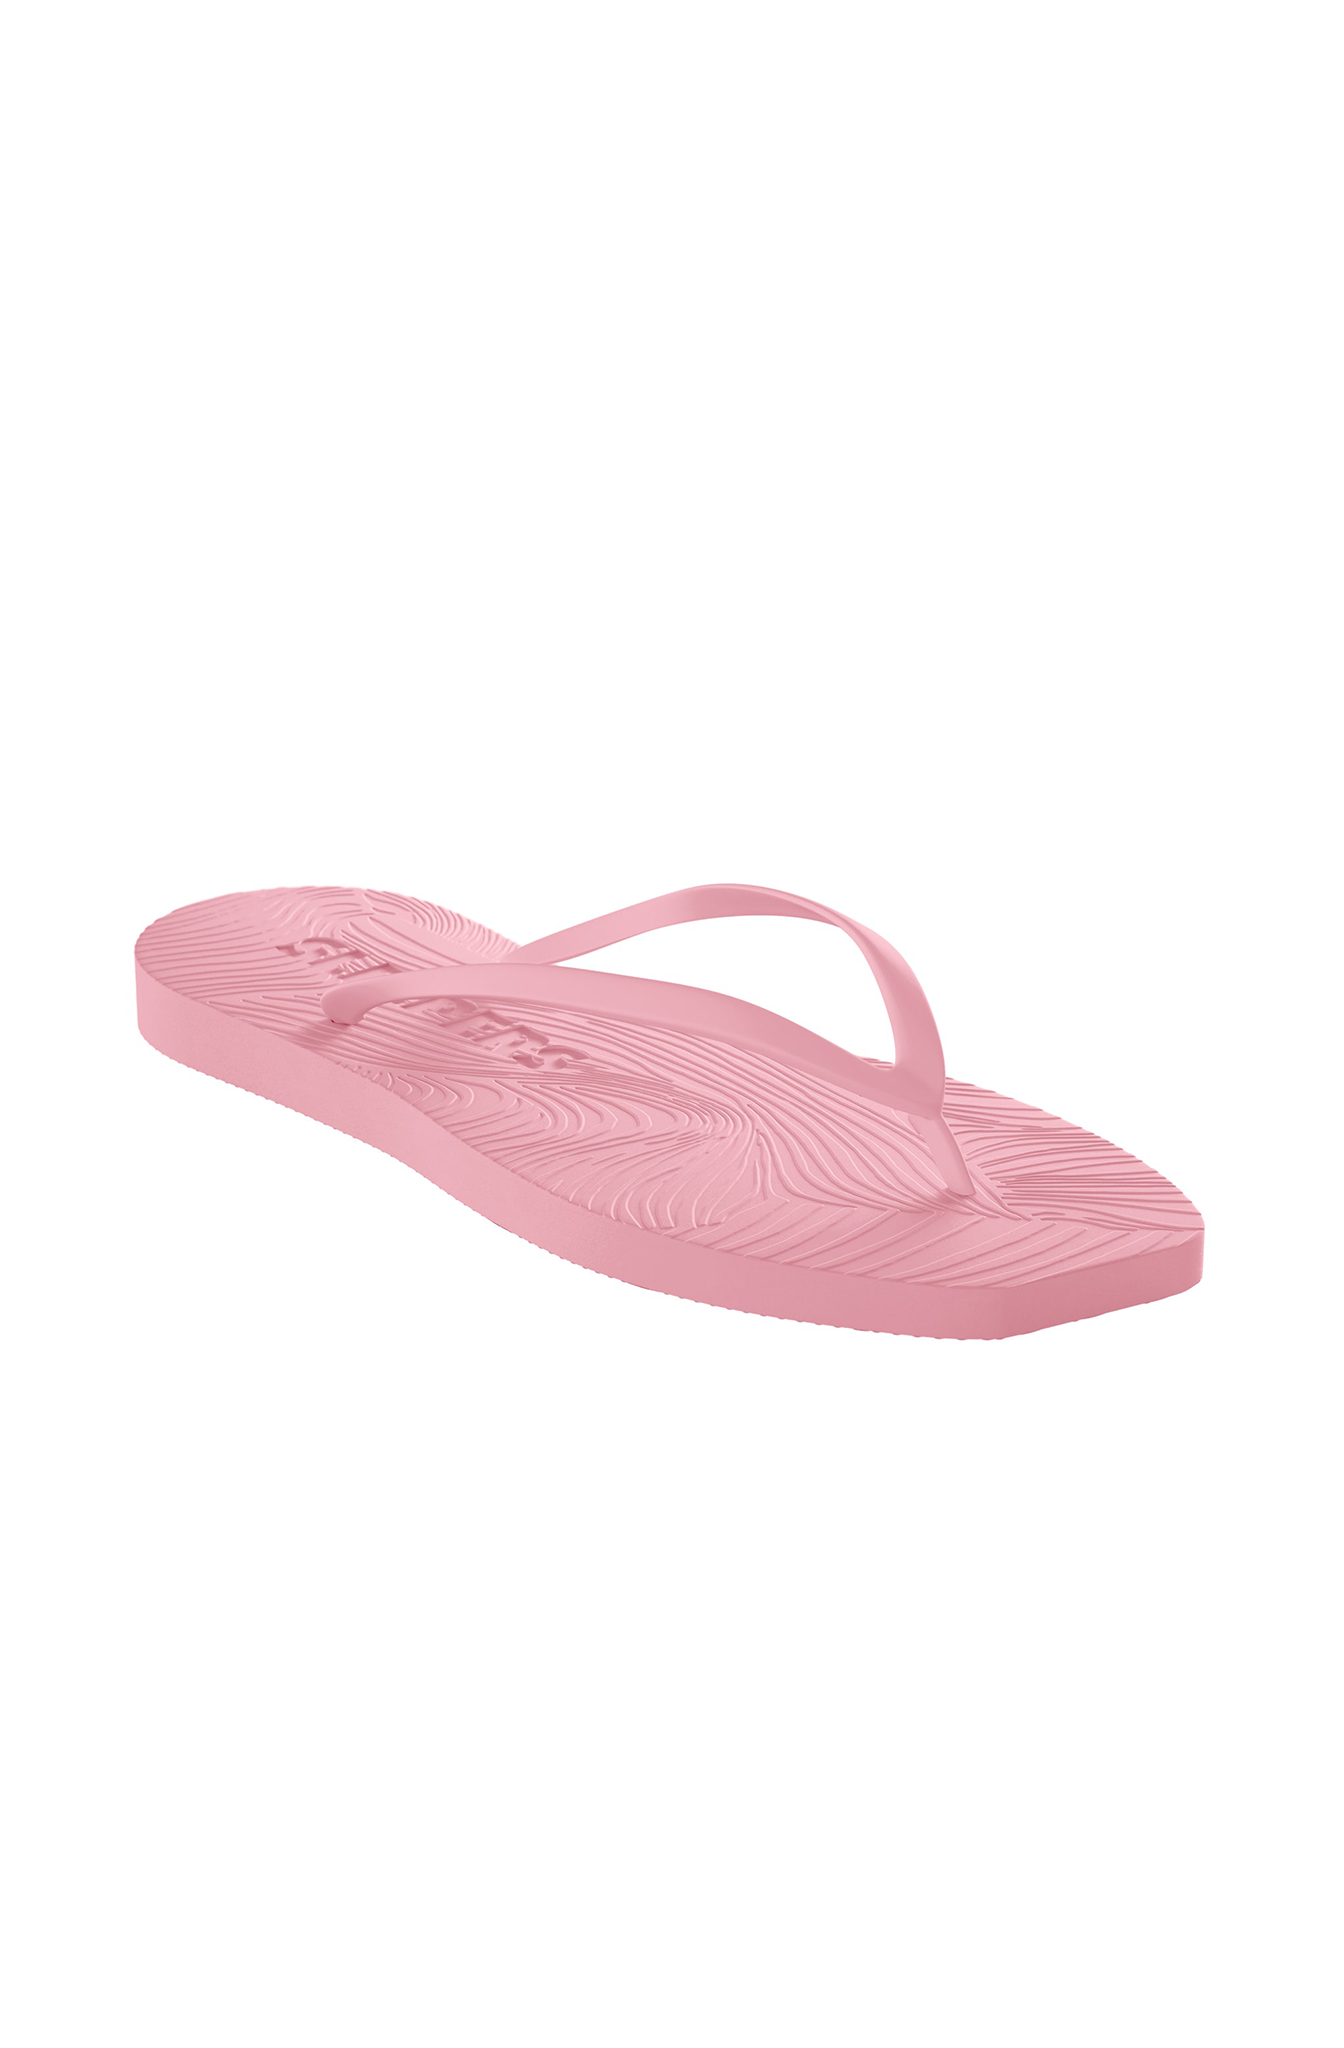 Sleepers - Tapered Pink Sorbet Flip flops